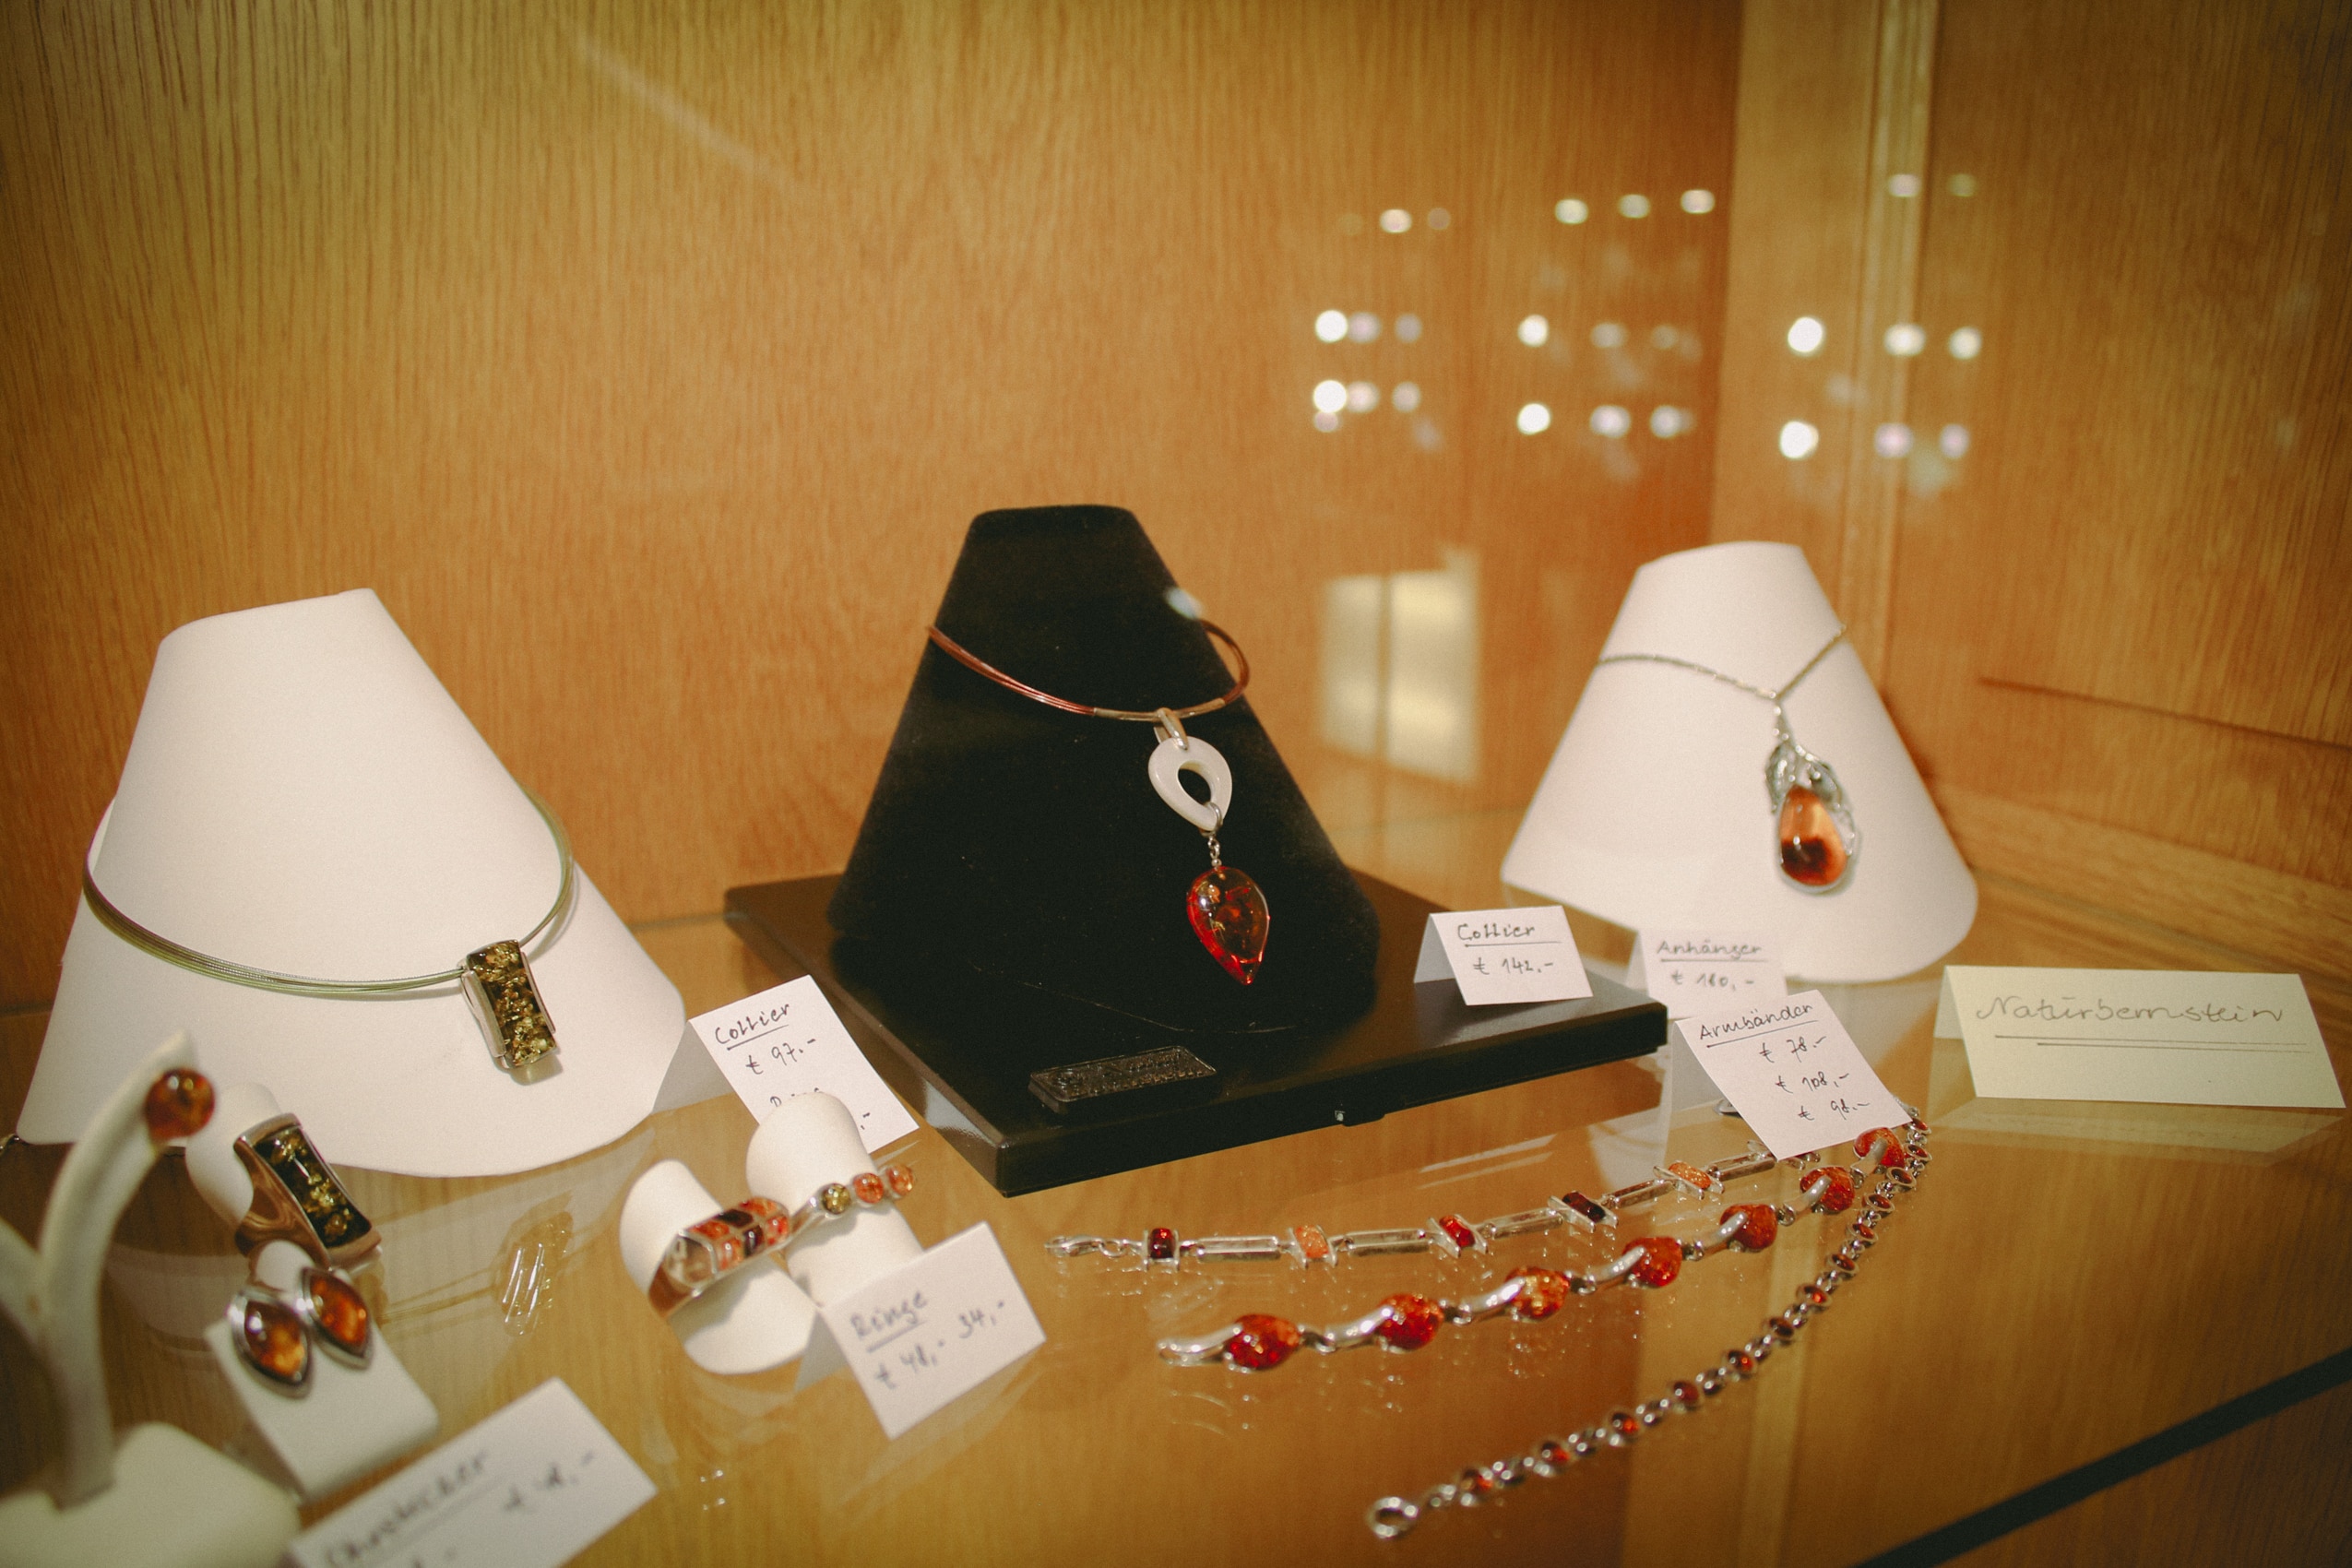 Ketten, Ringe, Armbänder und Ohrringe in der Auslage eines Juweliers.